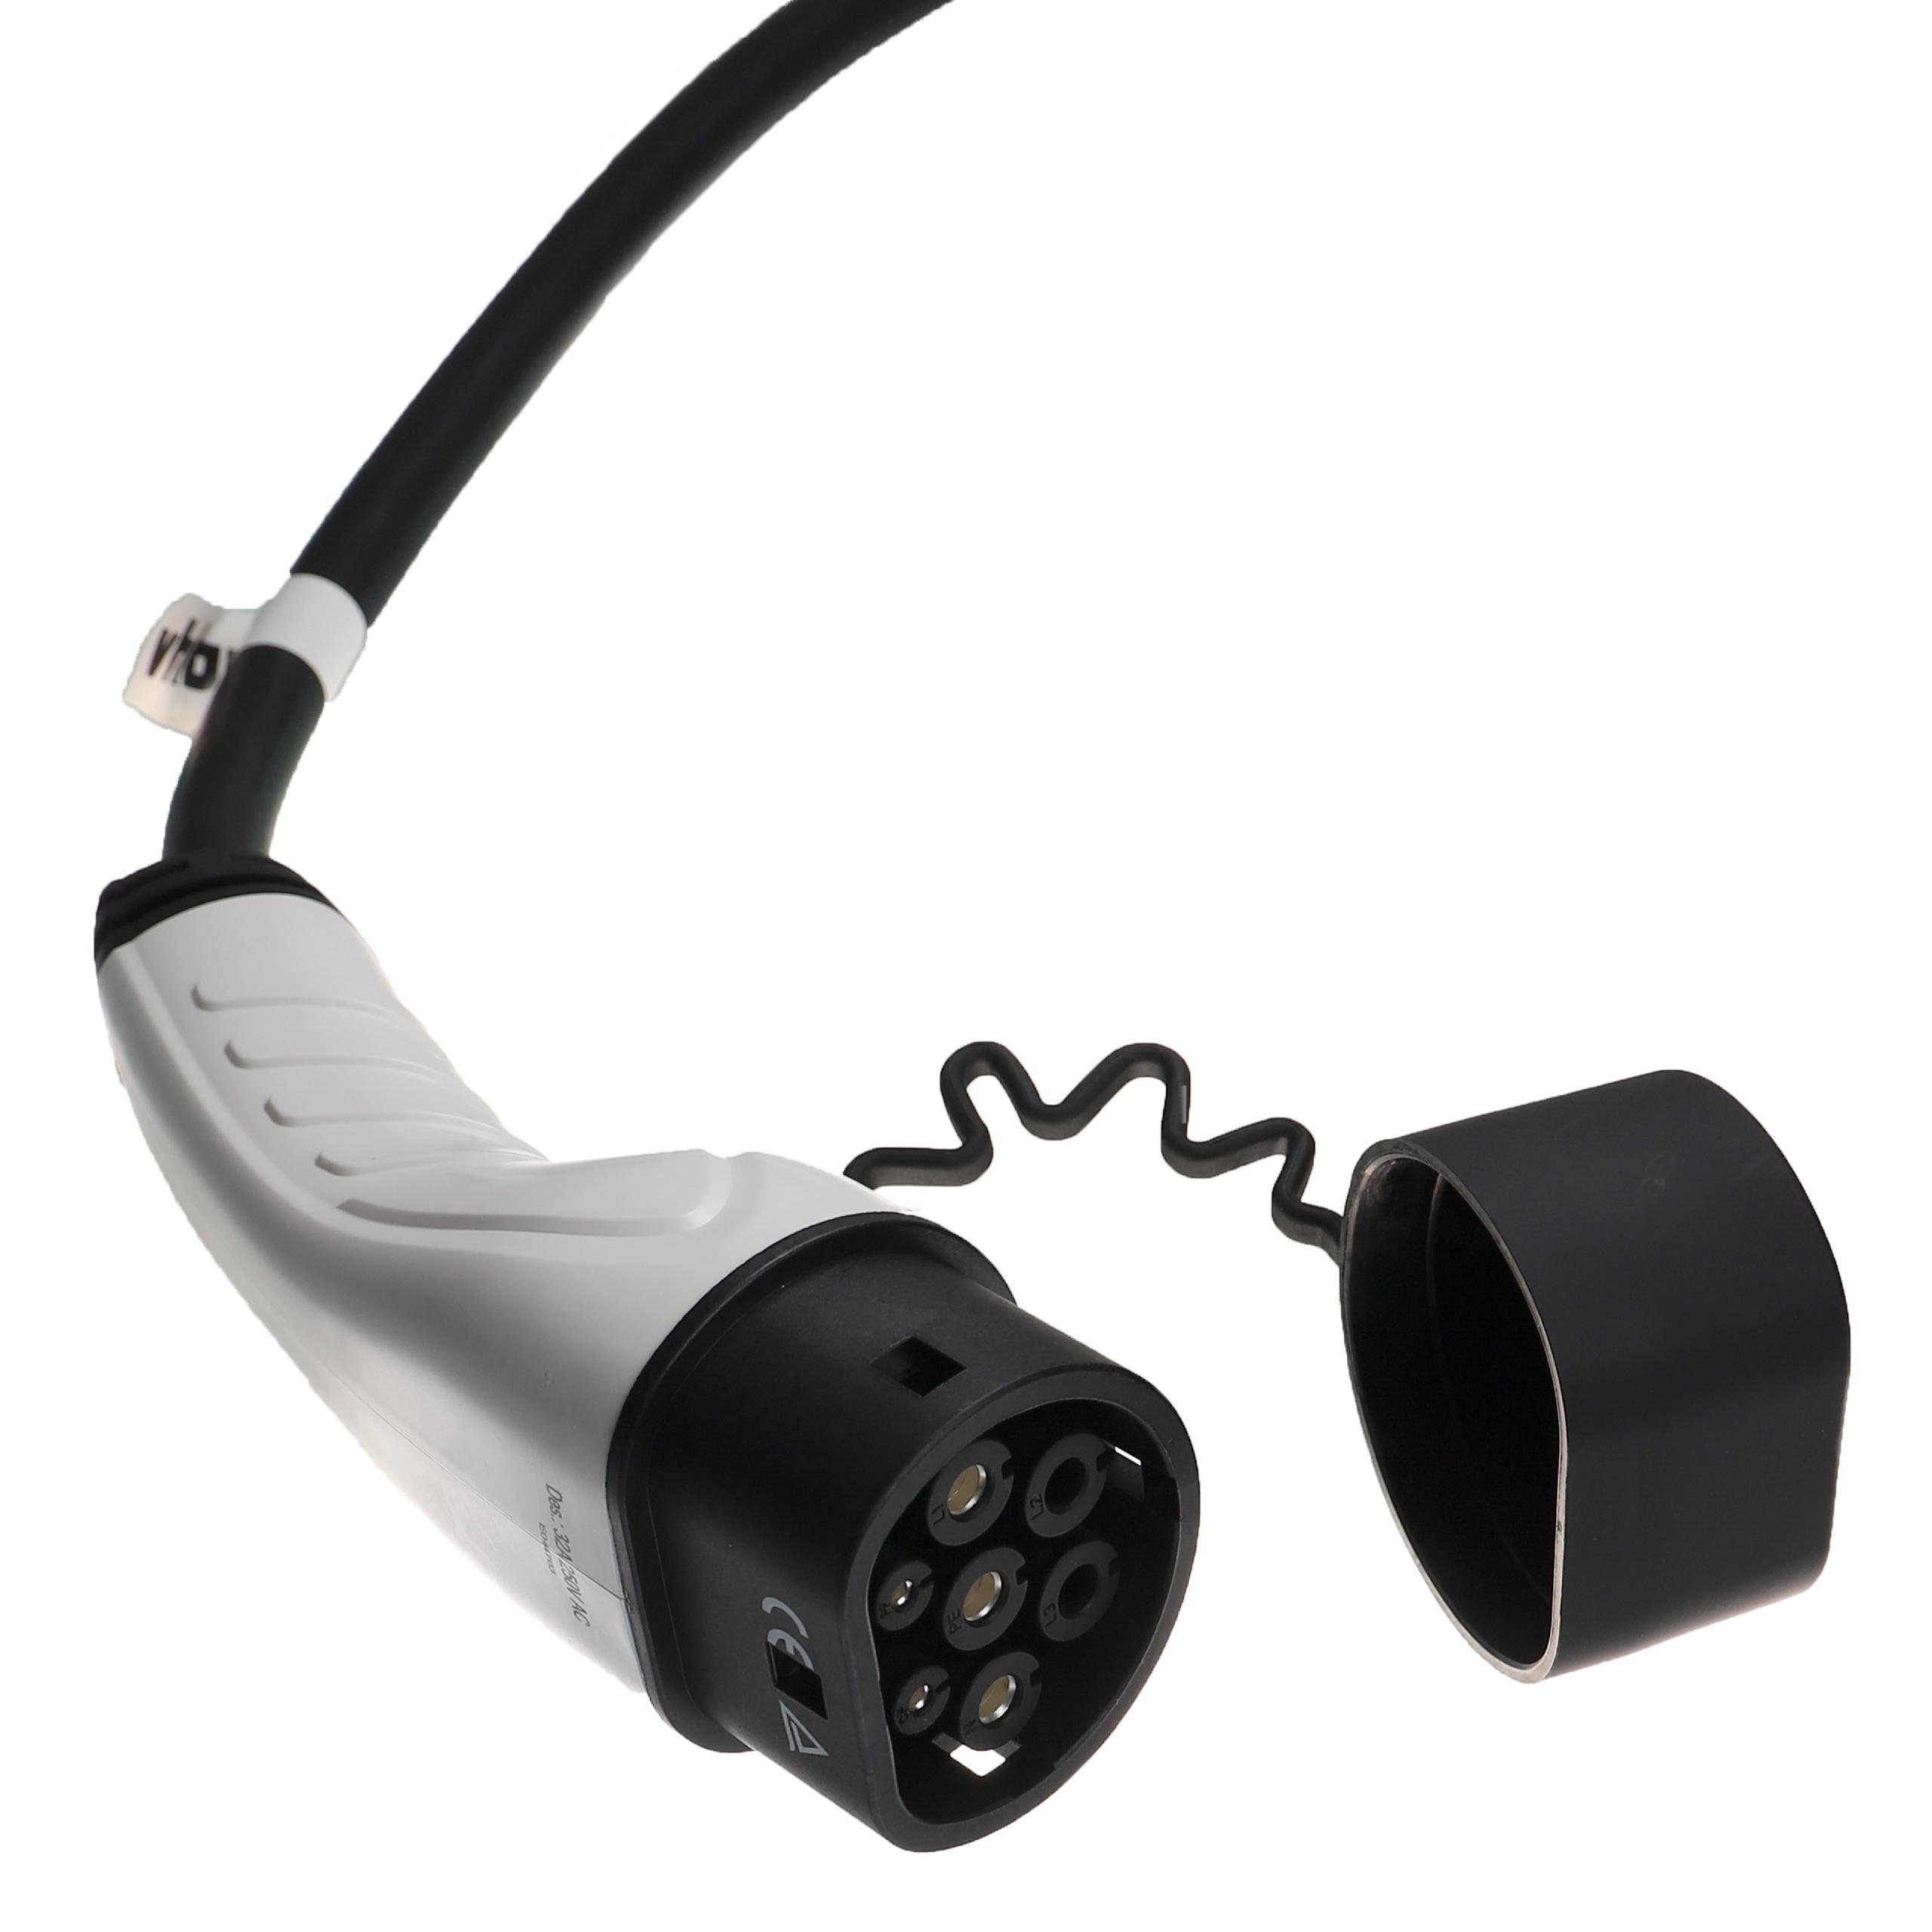 Elektro-Kabel passend In vhbw Mitsubishi Hybrid Elektroauto / für Eclipse Plug